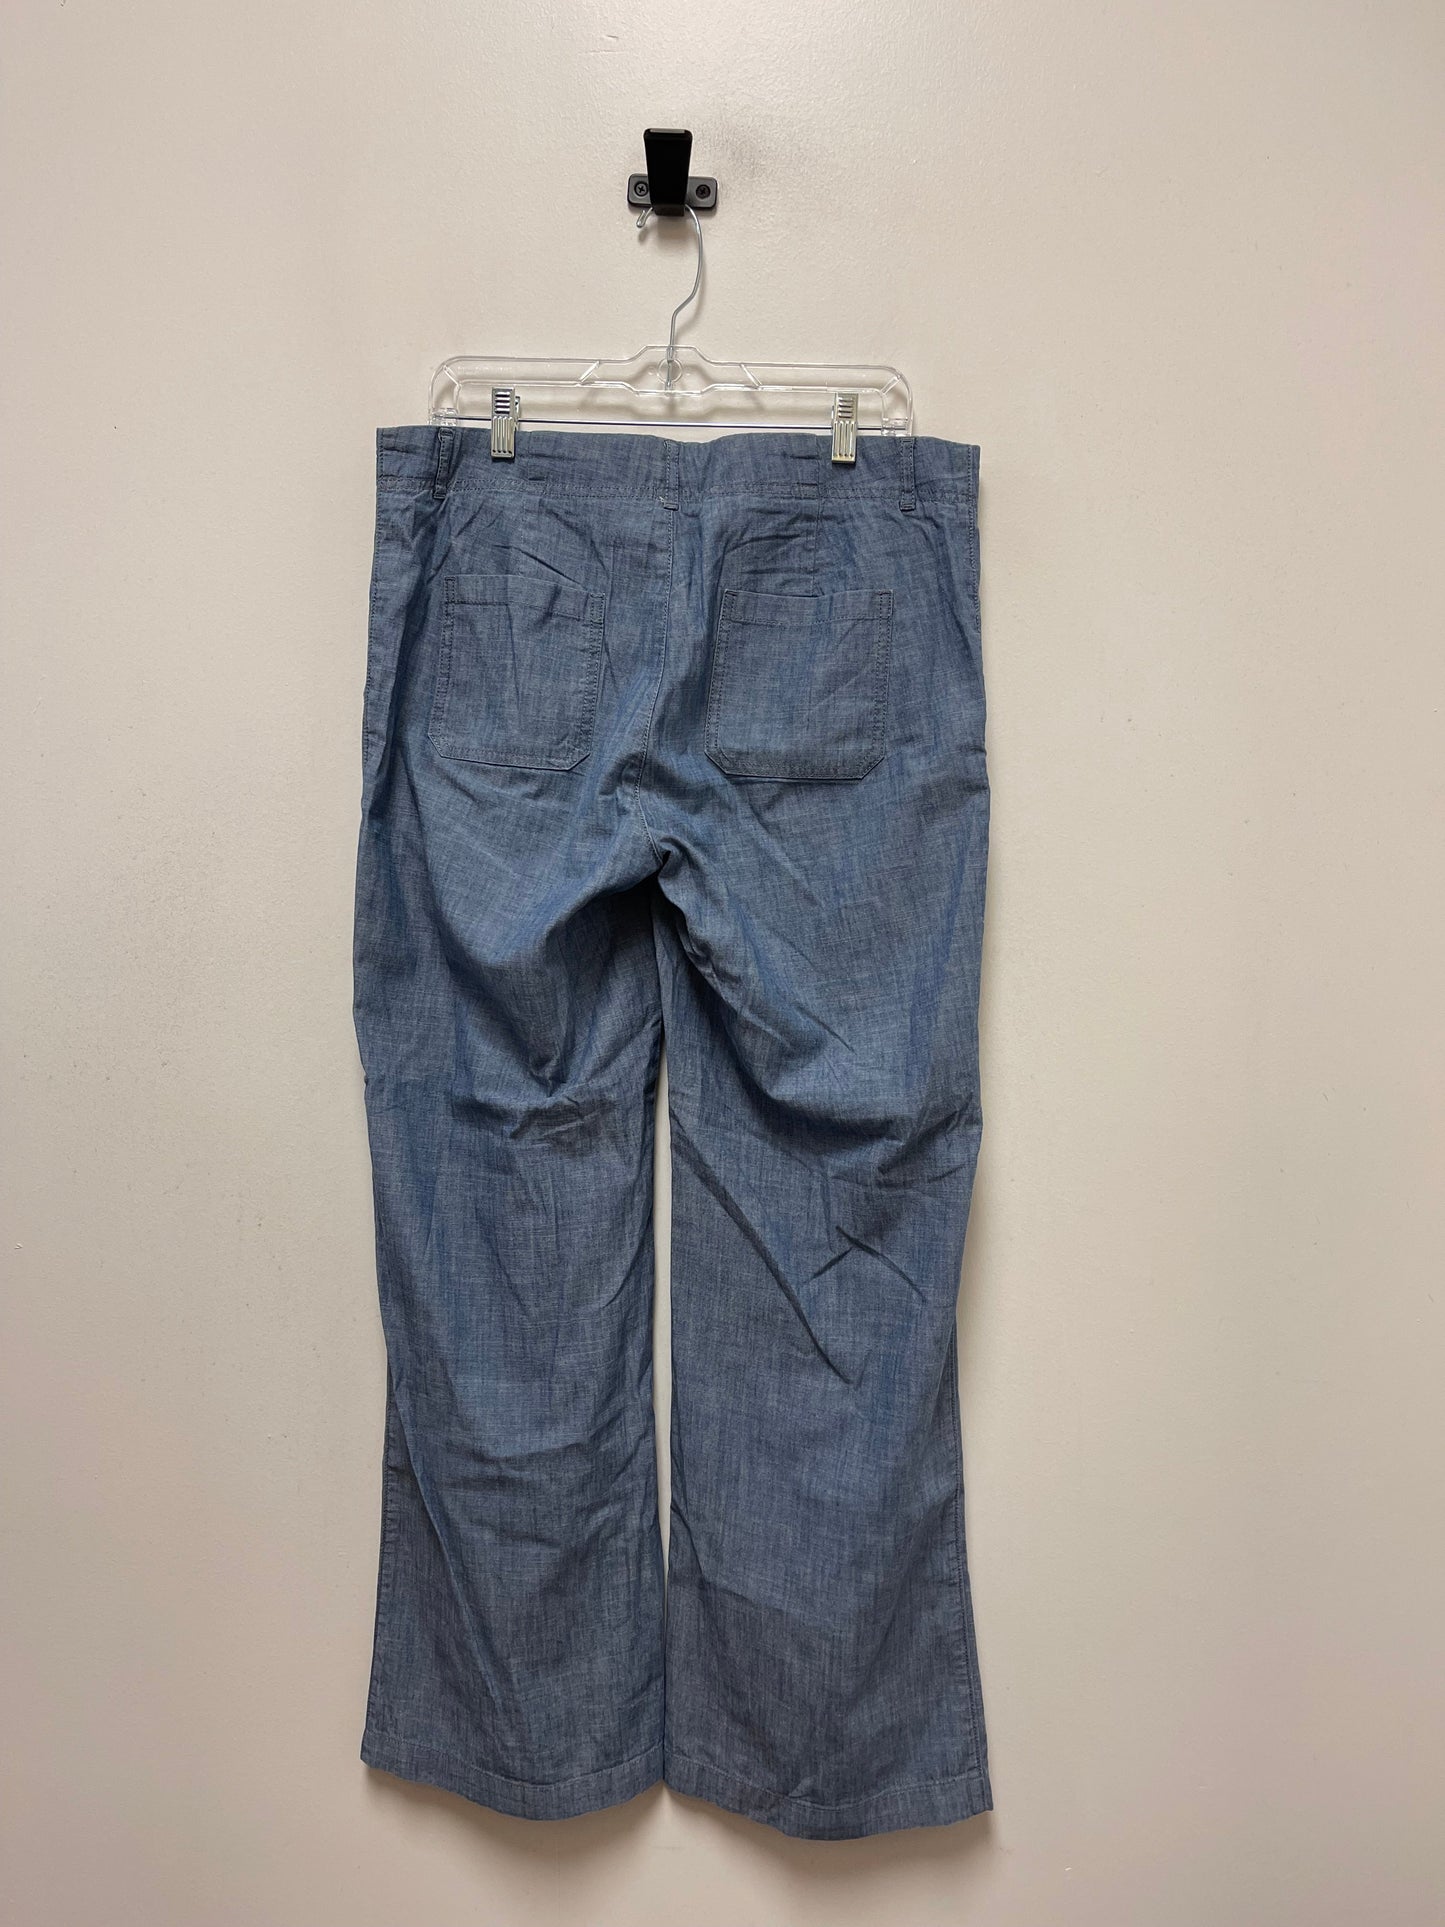 Blue Denim Pants Wide Leg Banana Republic, Size 10